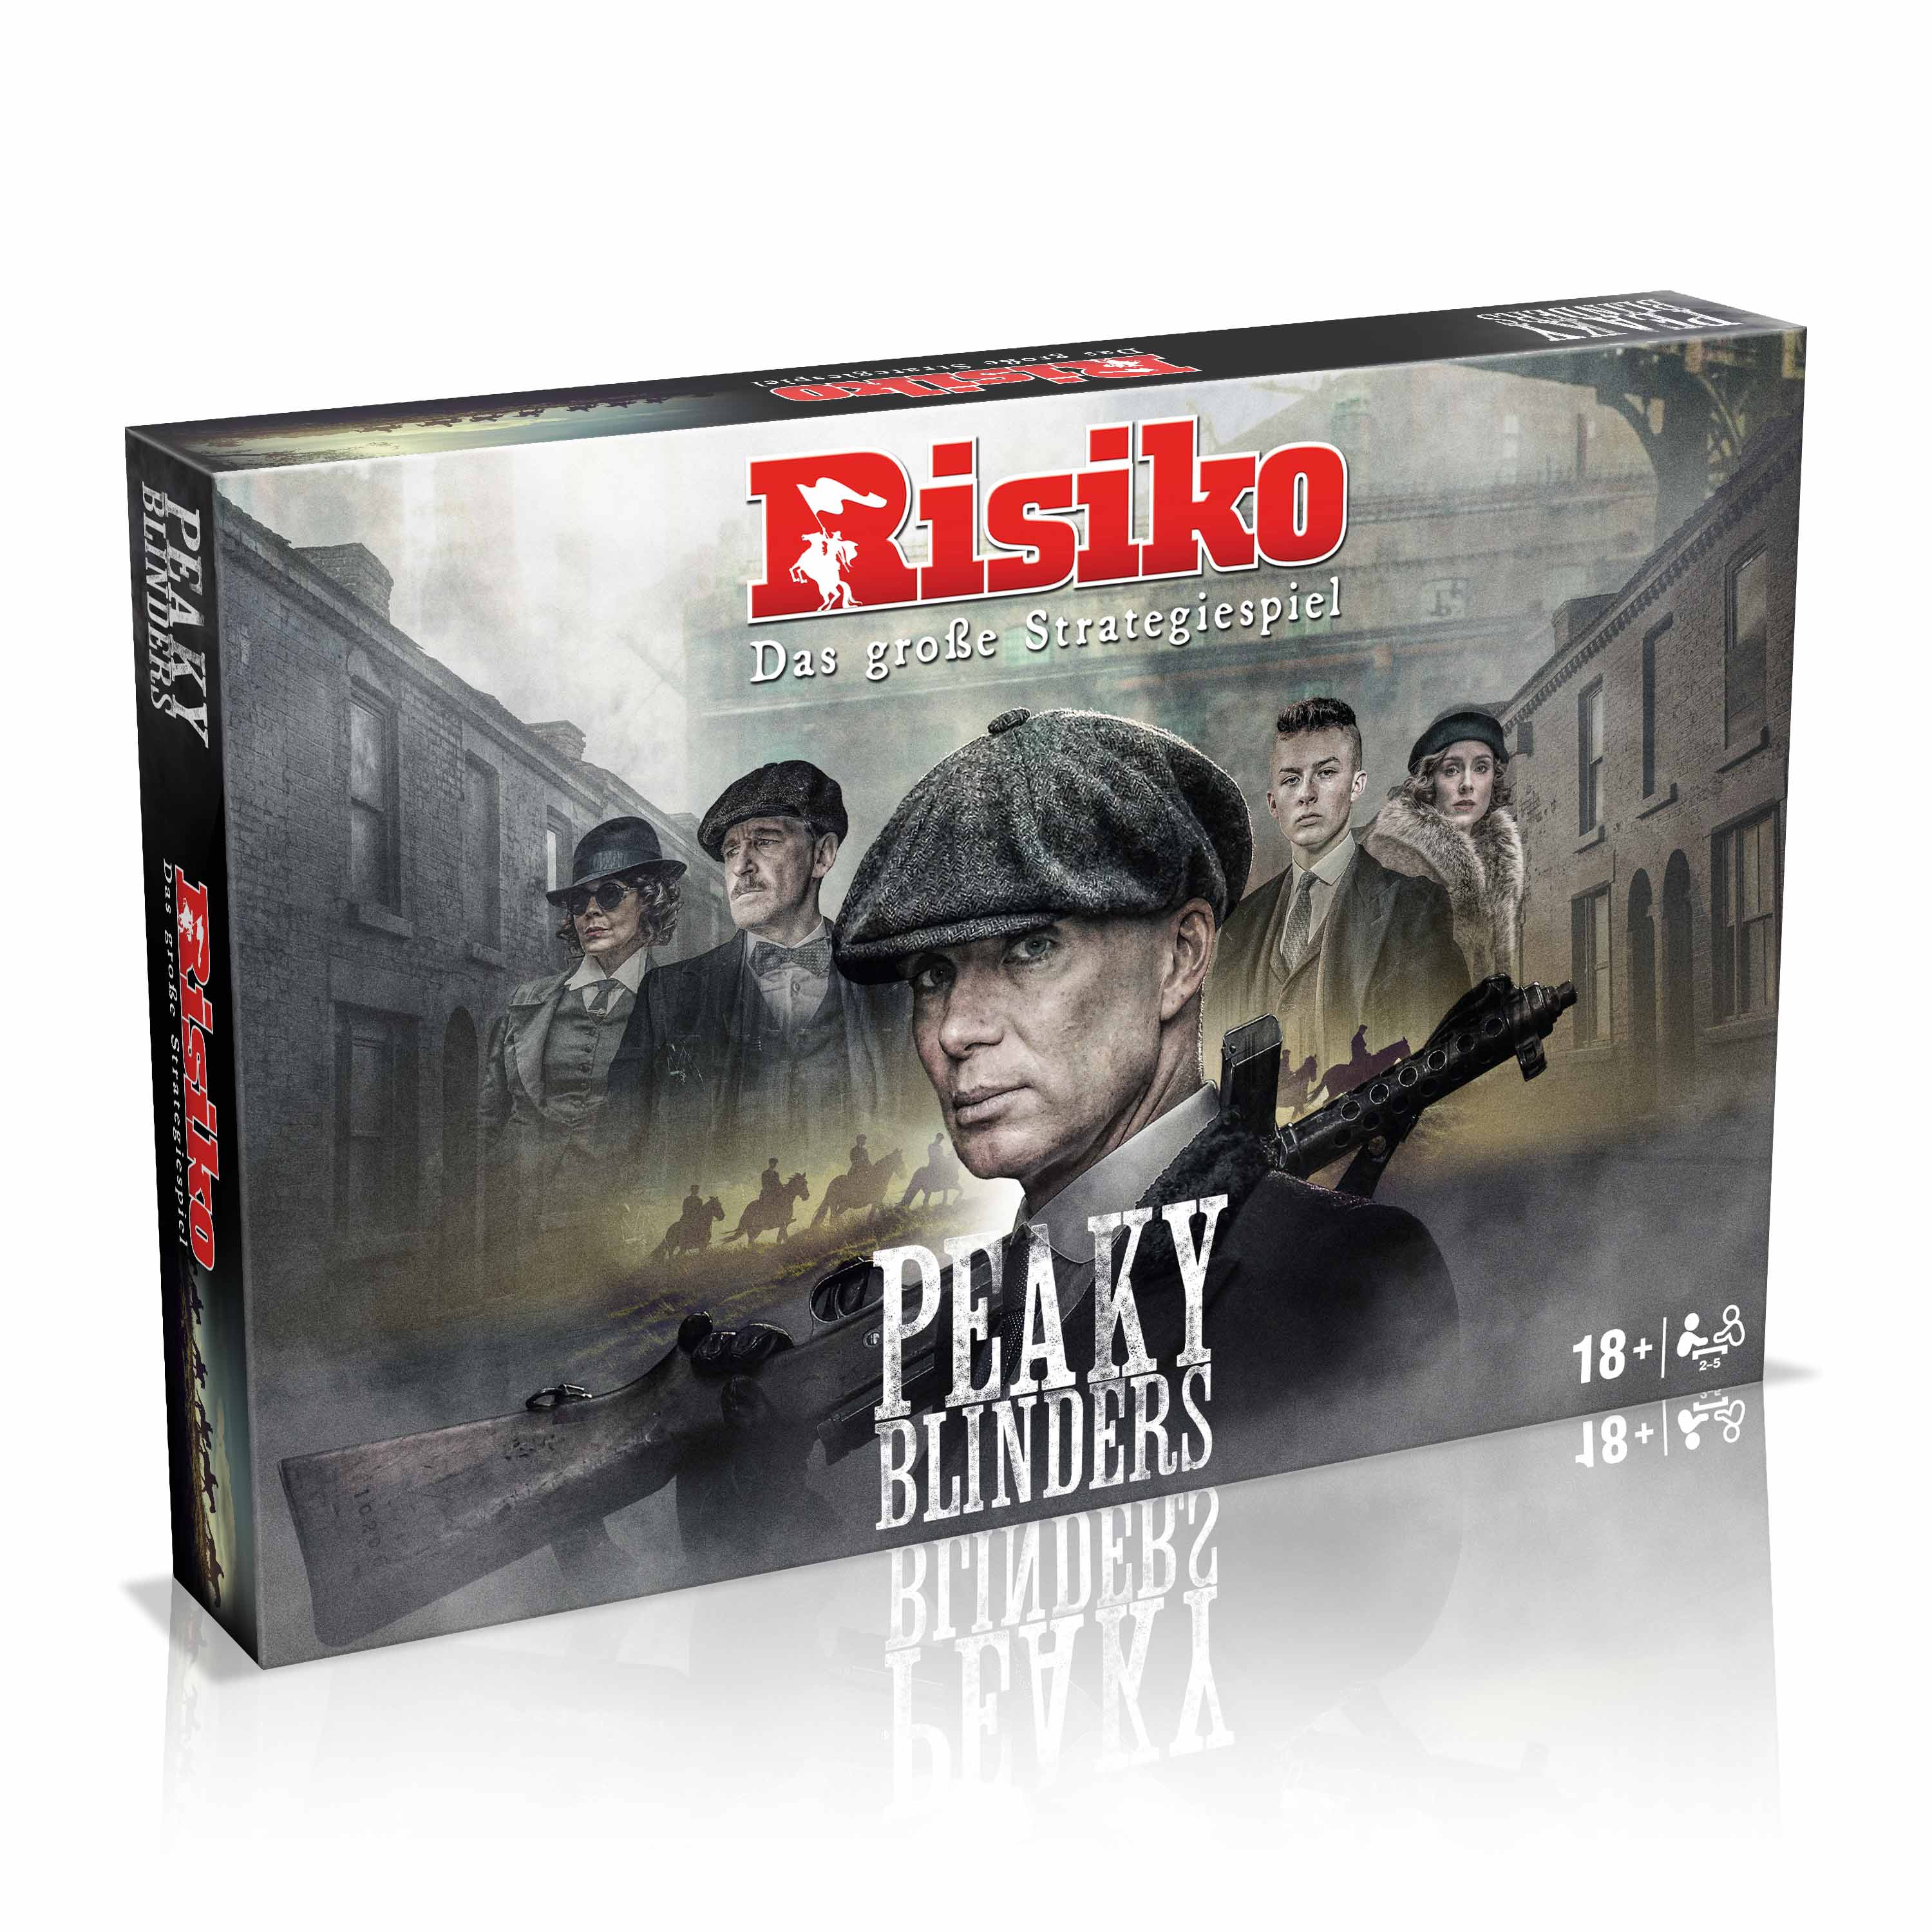 Risiko - Peaky Blinders